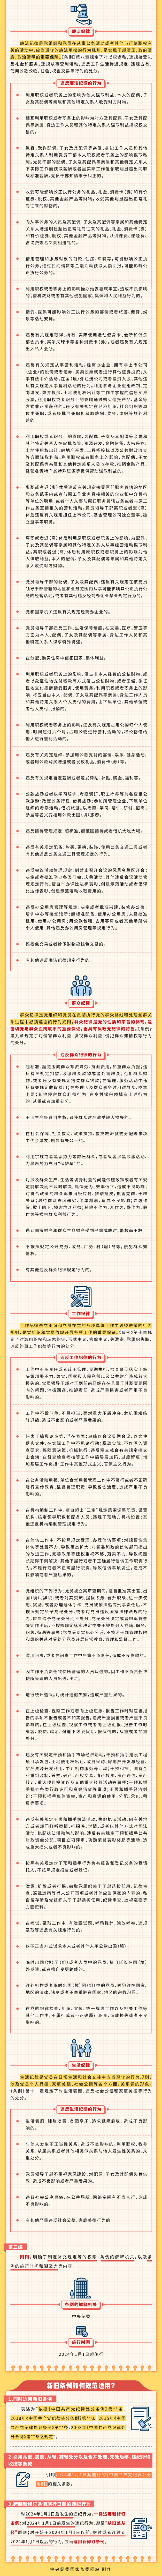 一图读懂·应知应会党纪法规丨《中国共产党纪律处分条例》